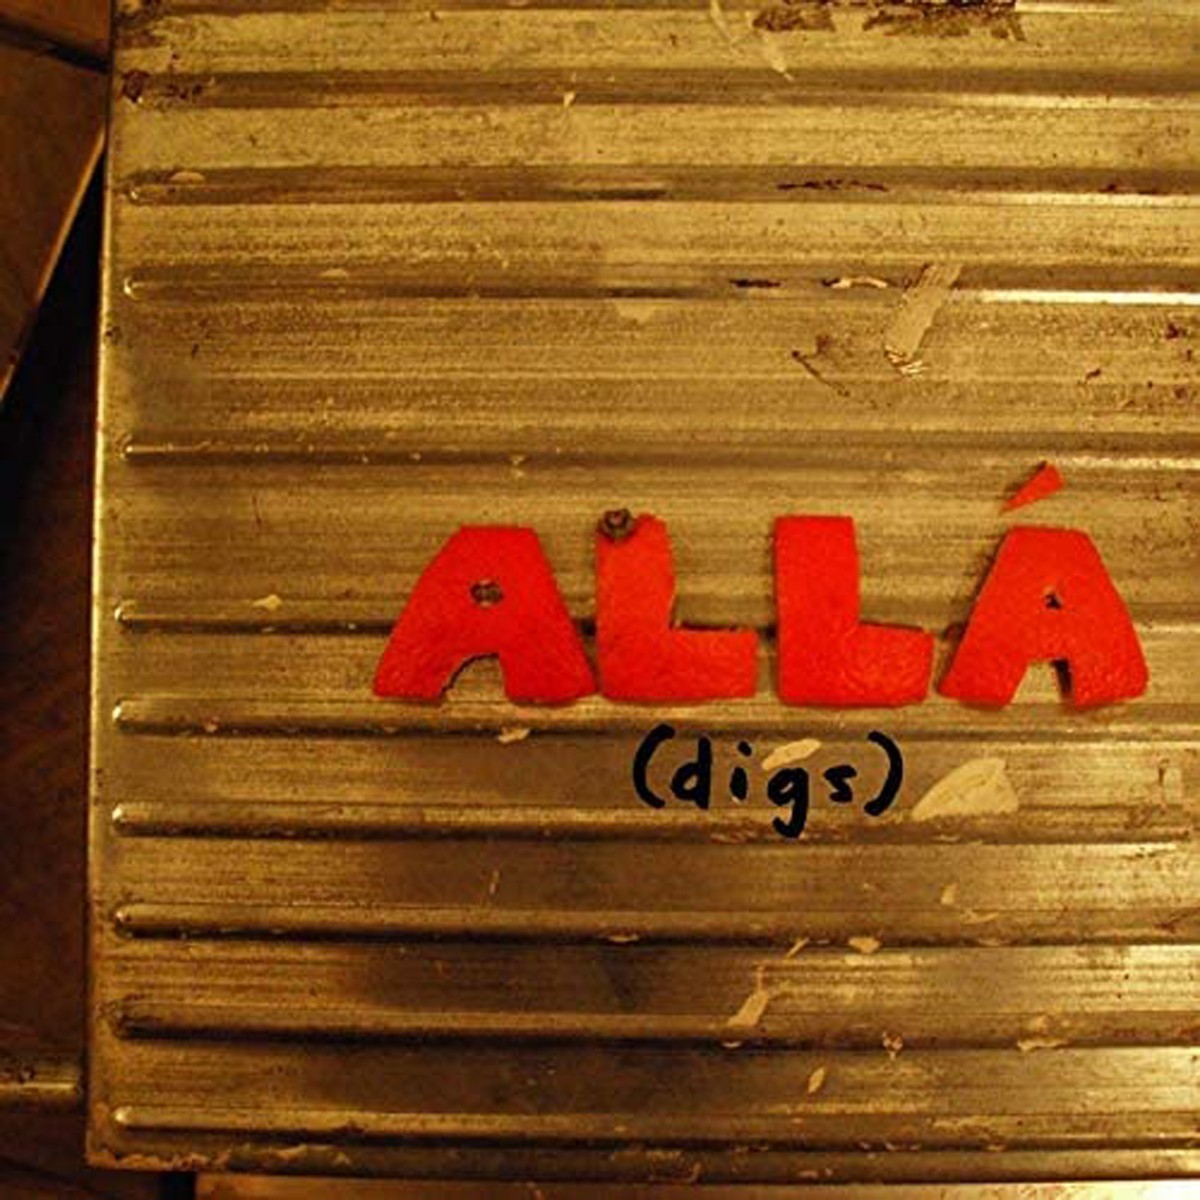 Alla - (Digs)